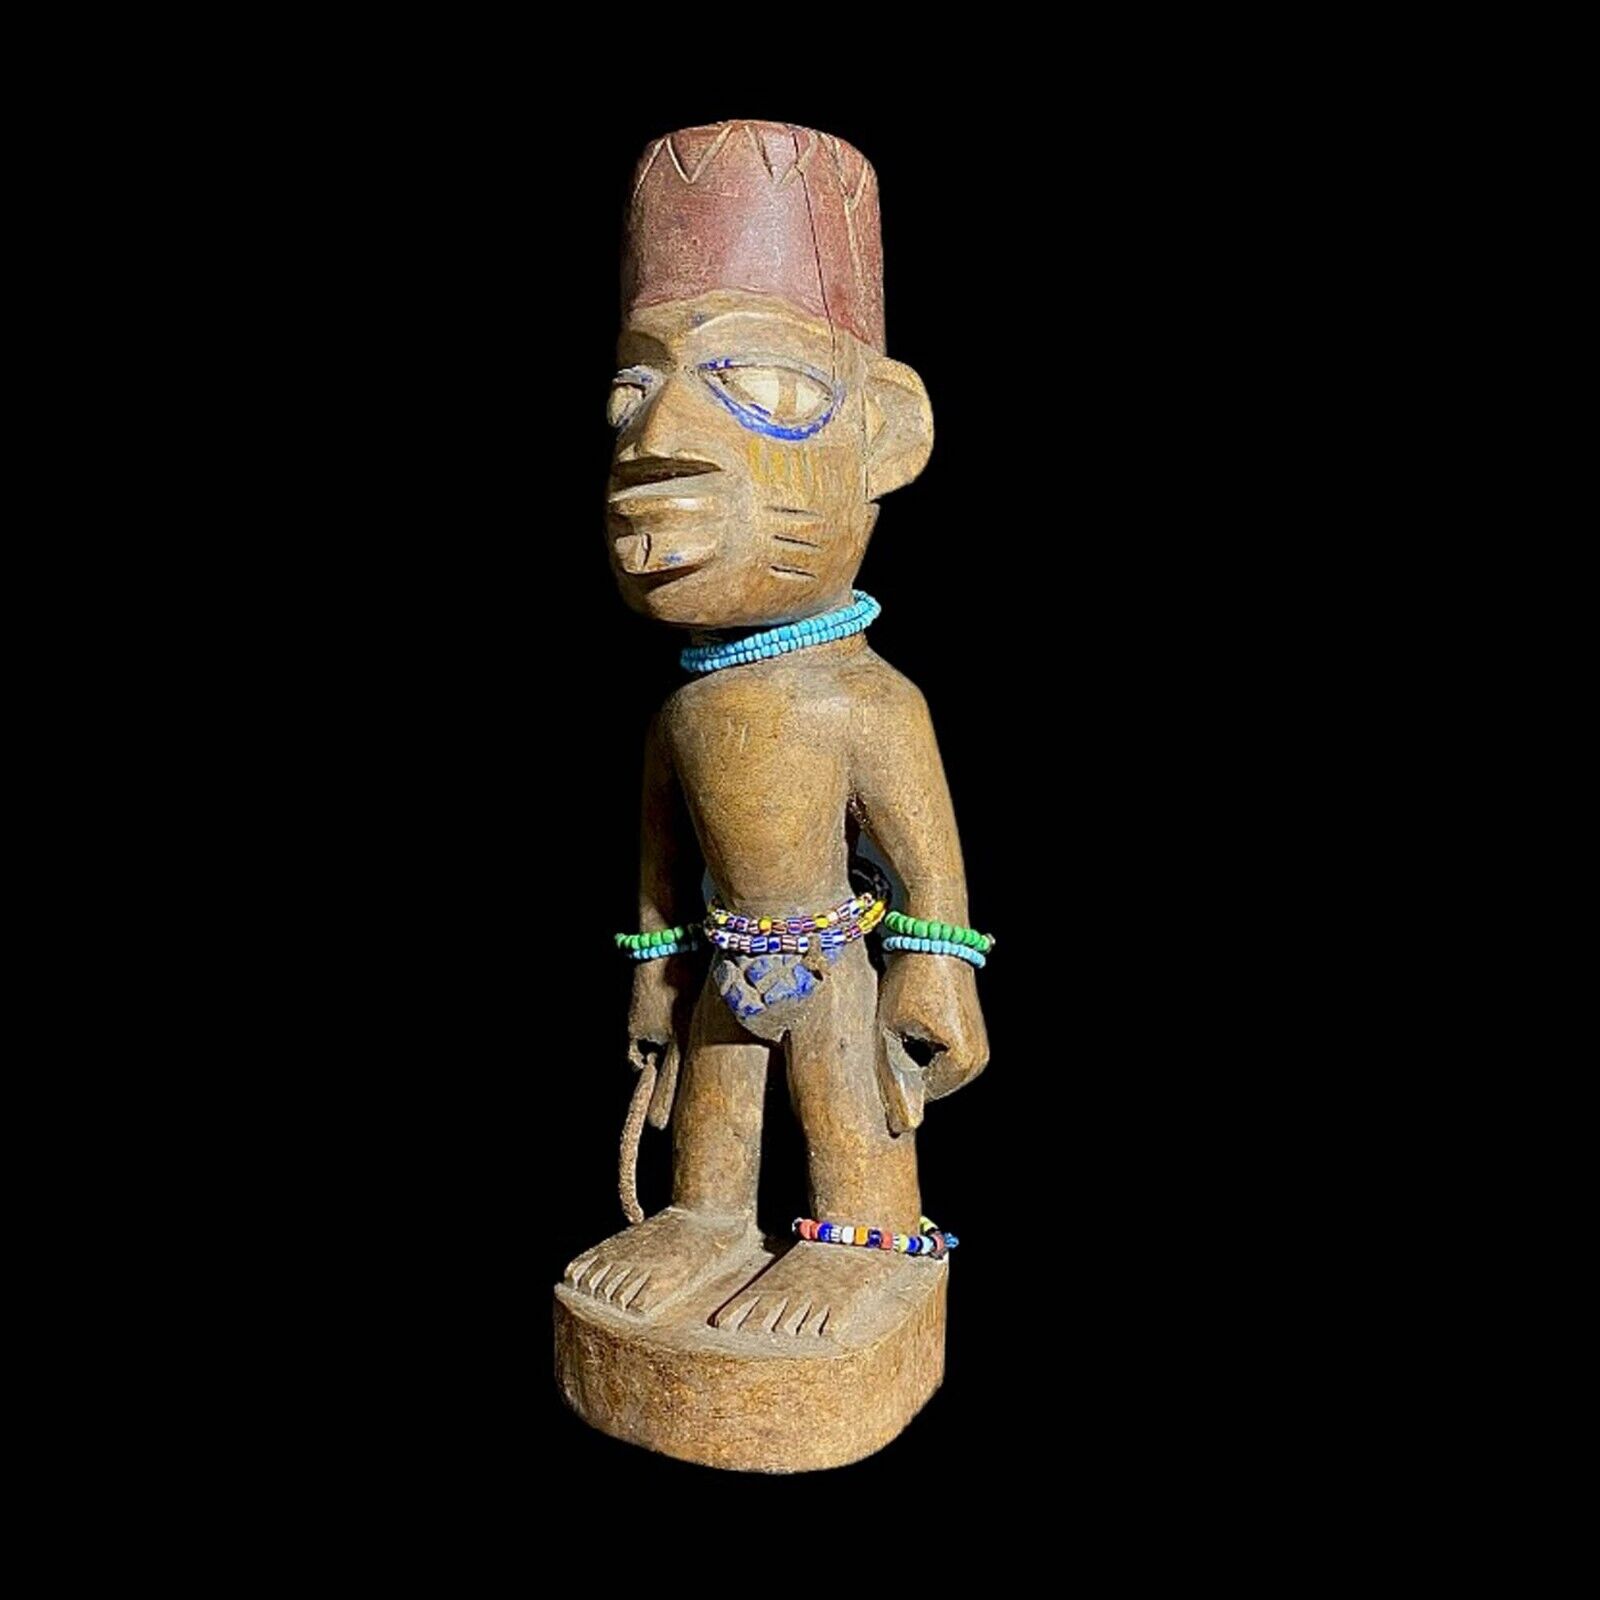 African Yourba Figures Peoples Nigeria African Sculpture Tribal Handmade-7689